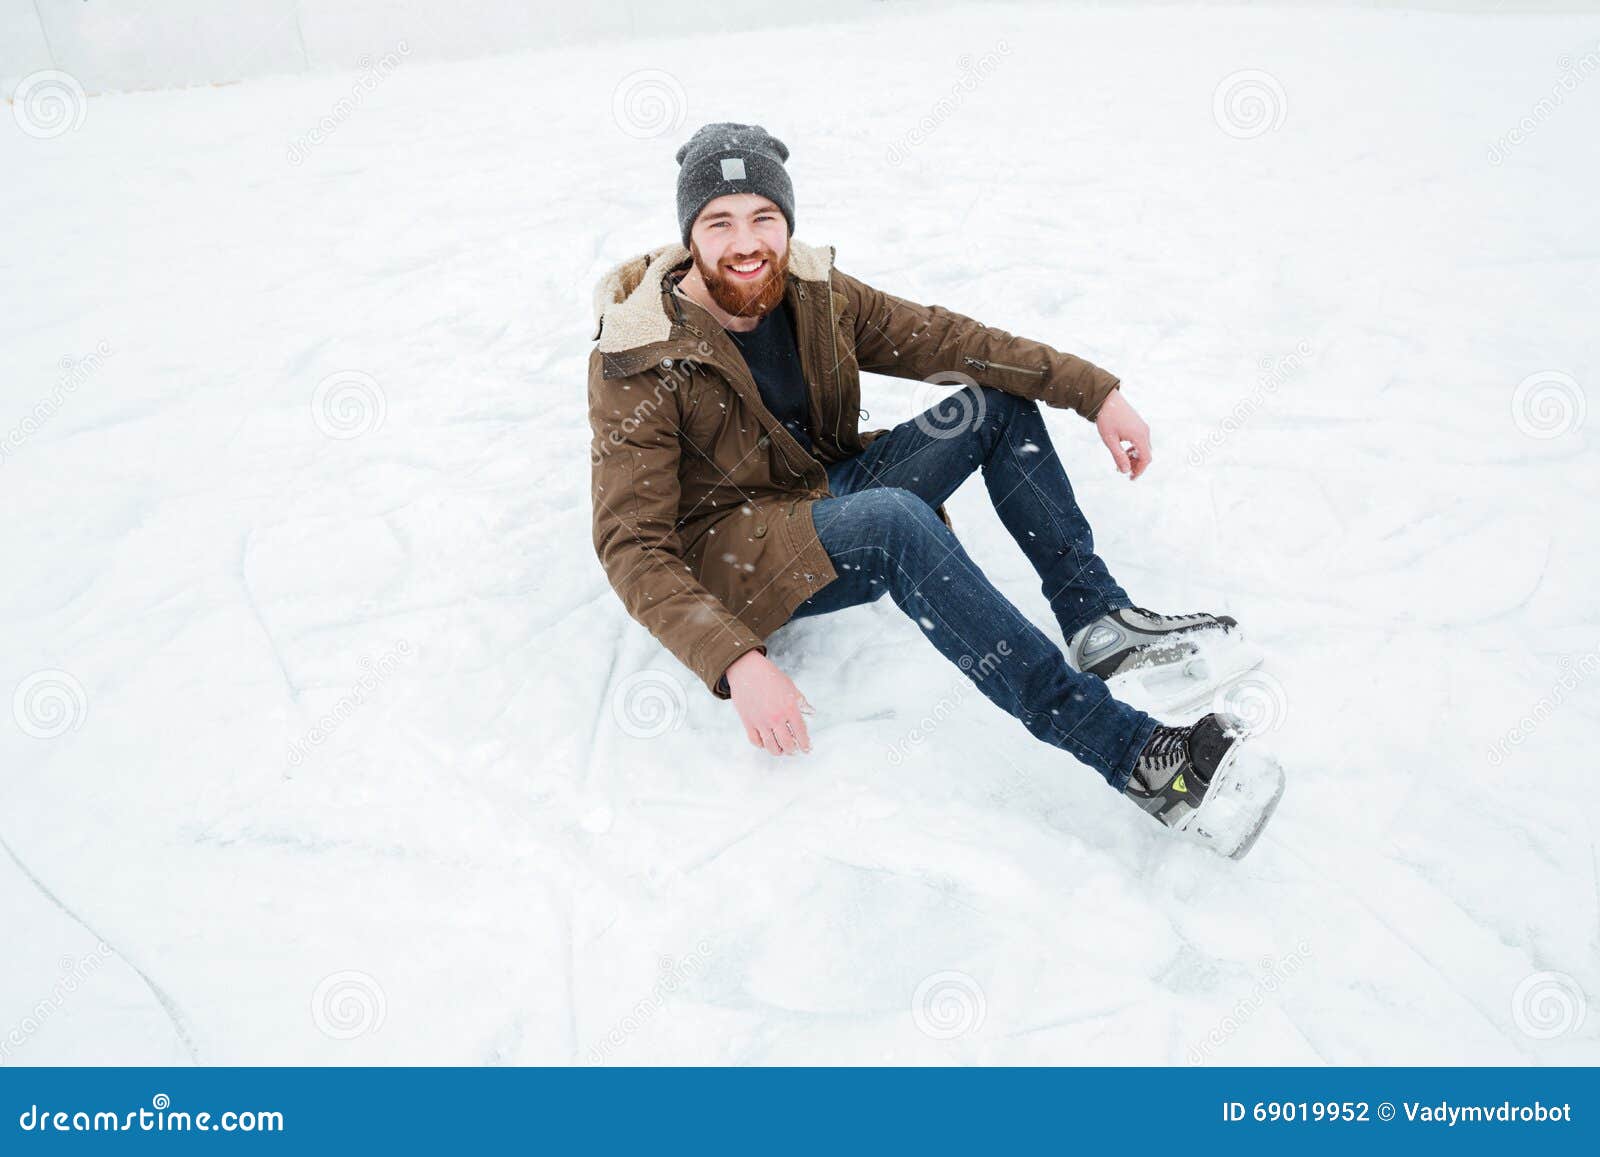 Сидит сугробе. Человек сидит на снегу. Парень сидит на снегу. Сидит в снегу. Парень в снегу.